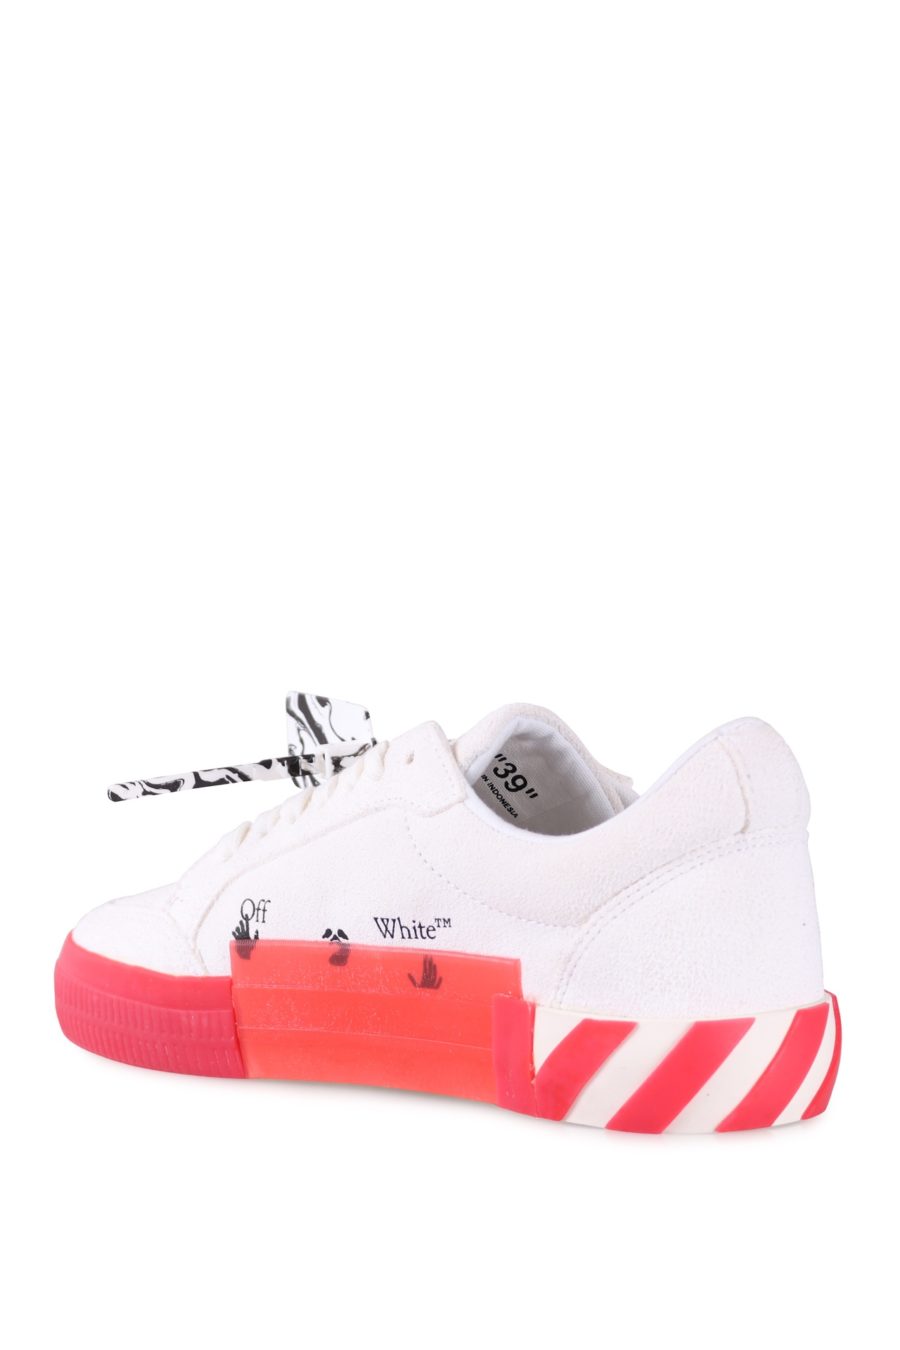 Zapatillas Off-White blancas con rojo - a69066ccb98bdd90129bf936675407a7d122025d